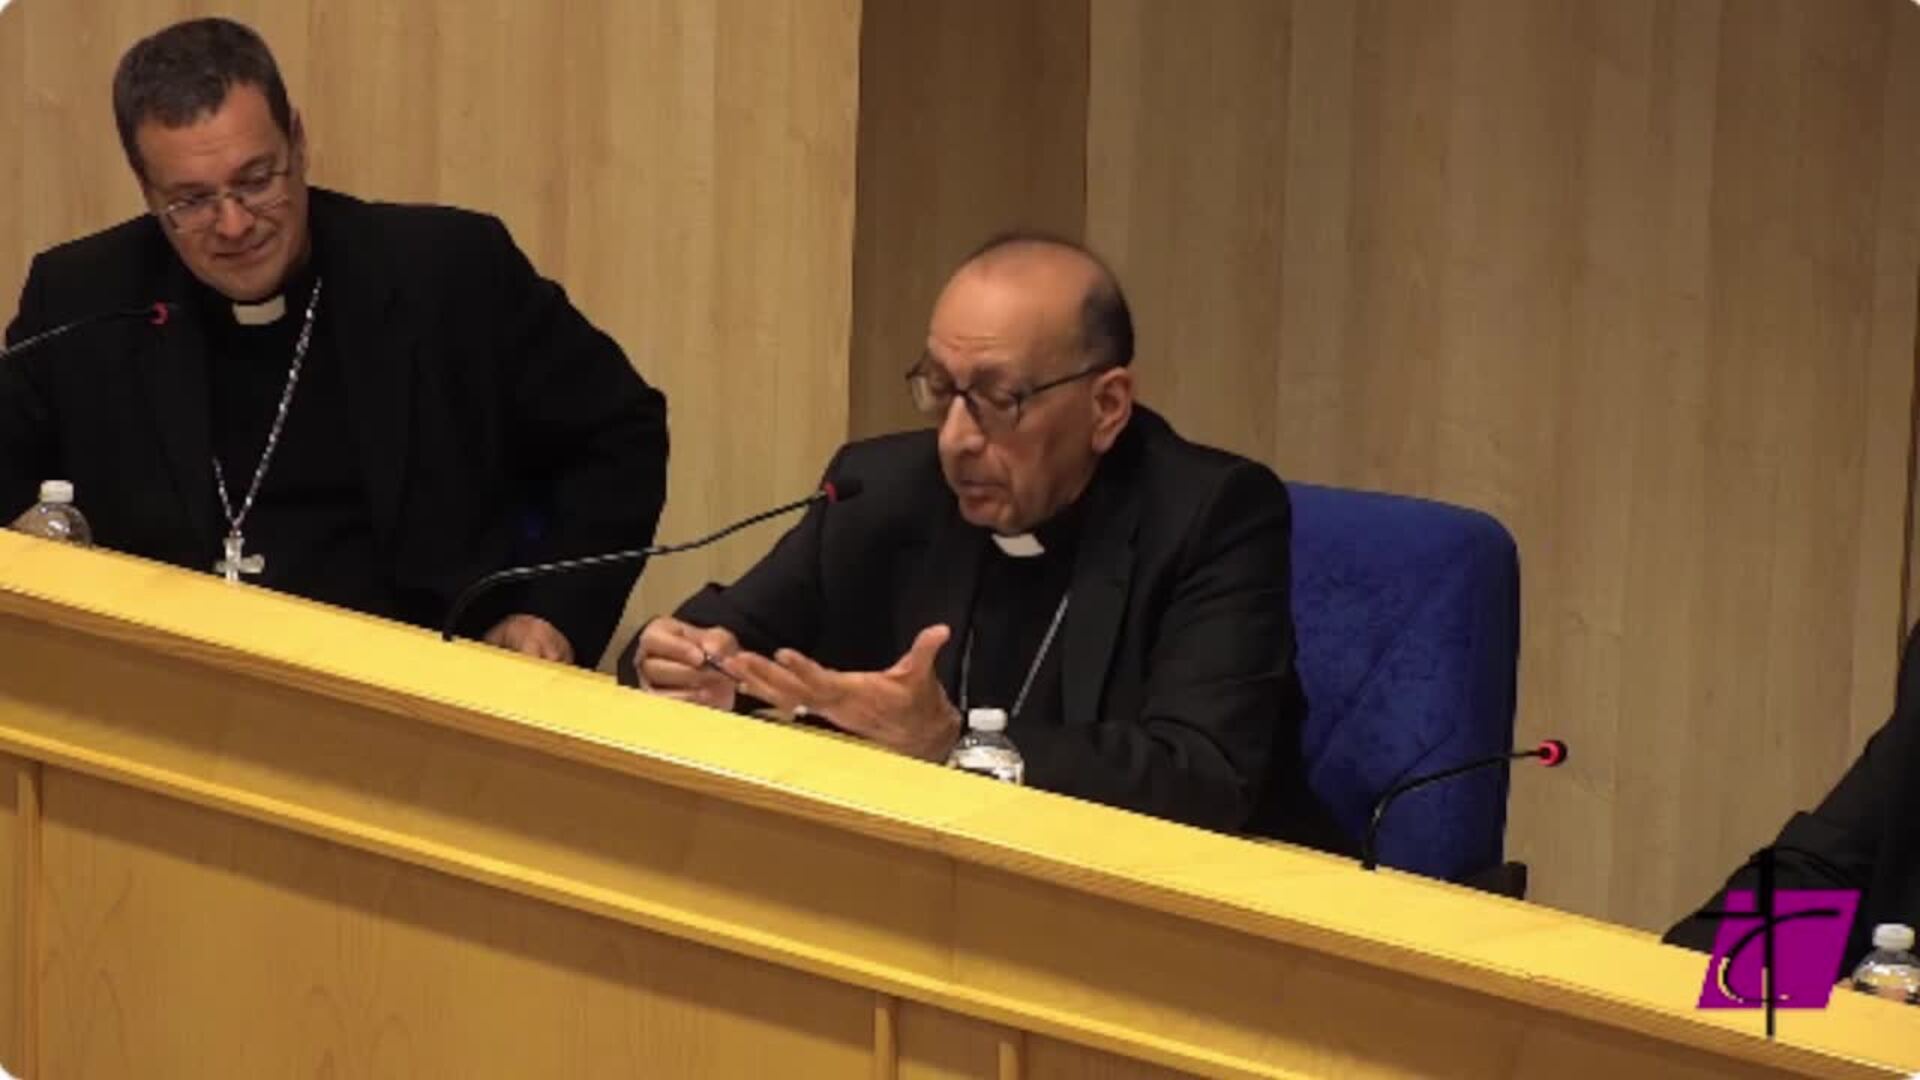 El Papa conversa dos horas con los obispos españoles sin mención los abusos sexuales a menores